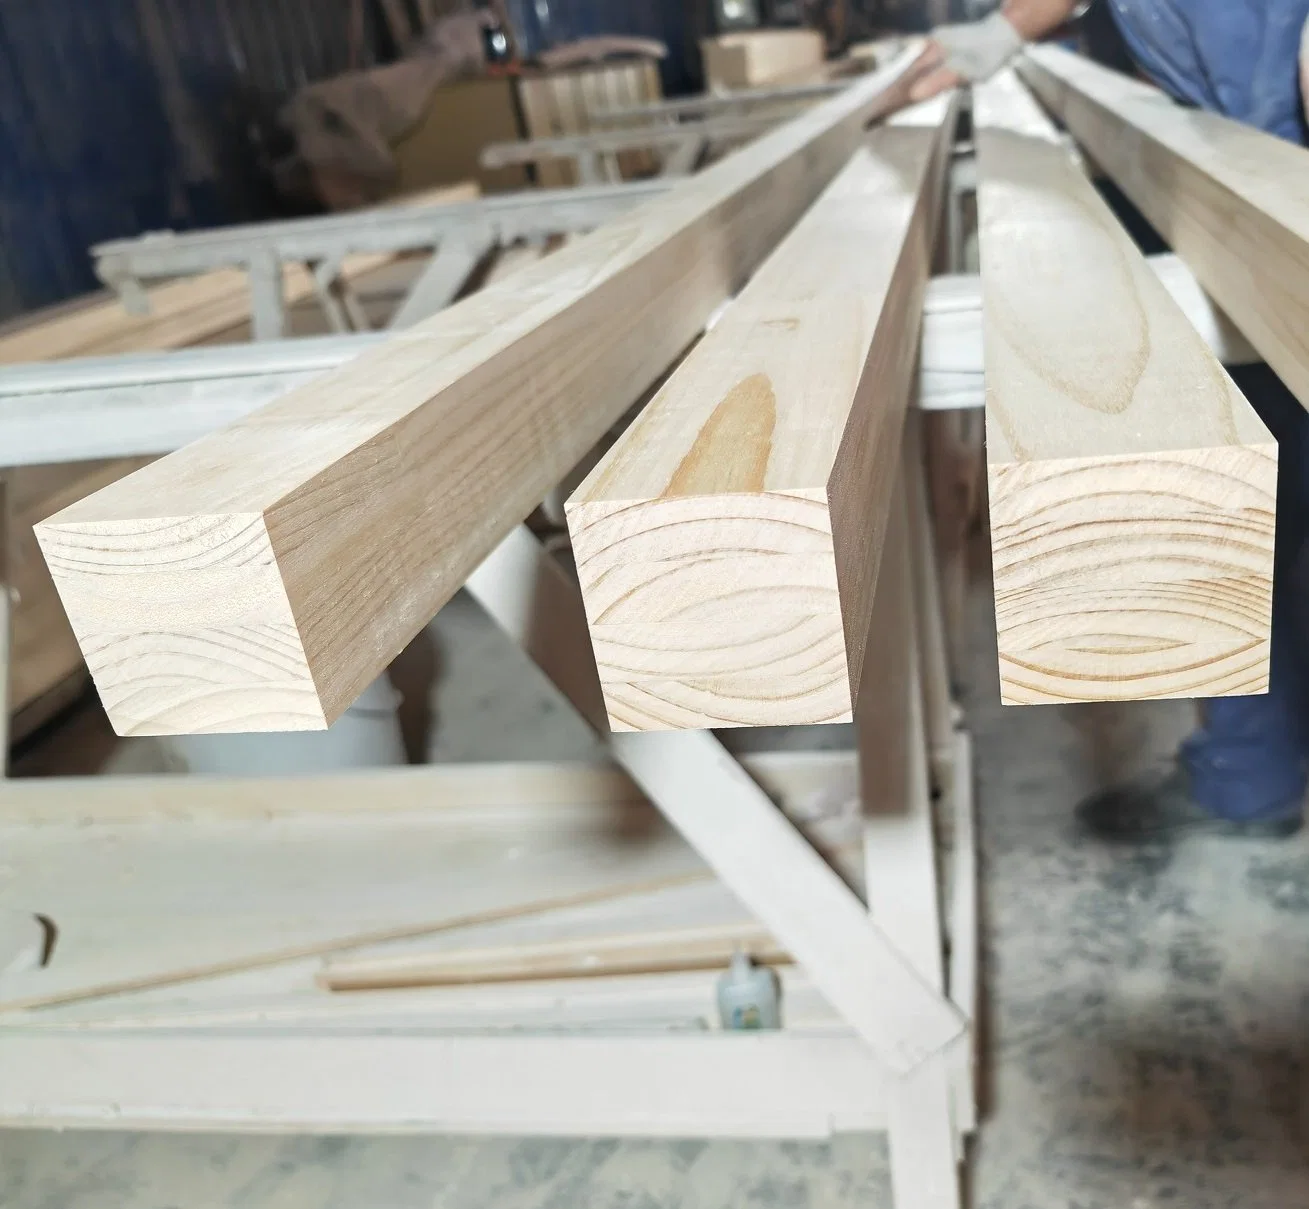 Veneer Lumber Furniture Solid Wood Panel Finger Jointed Boards Wood Board